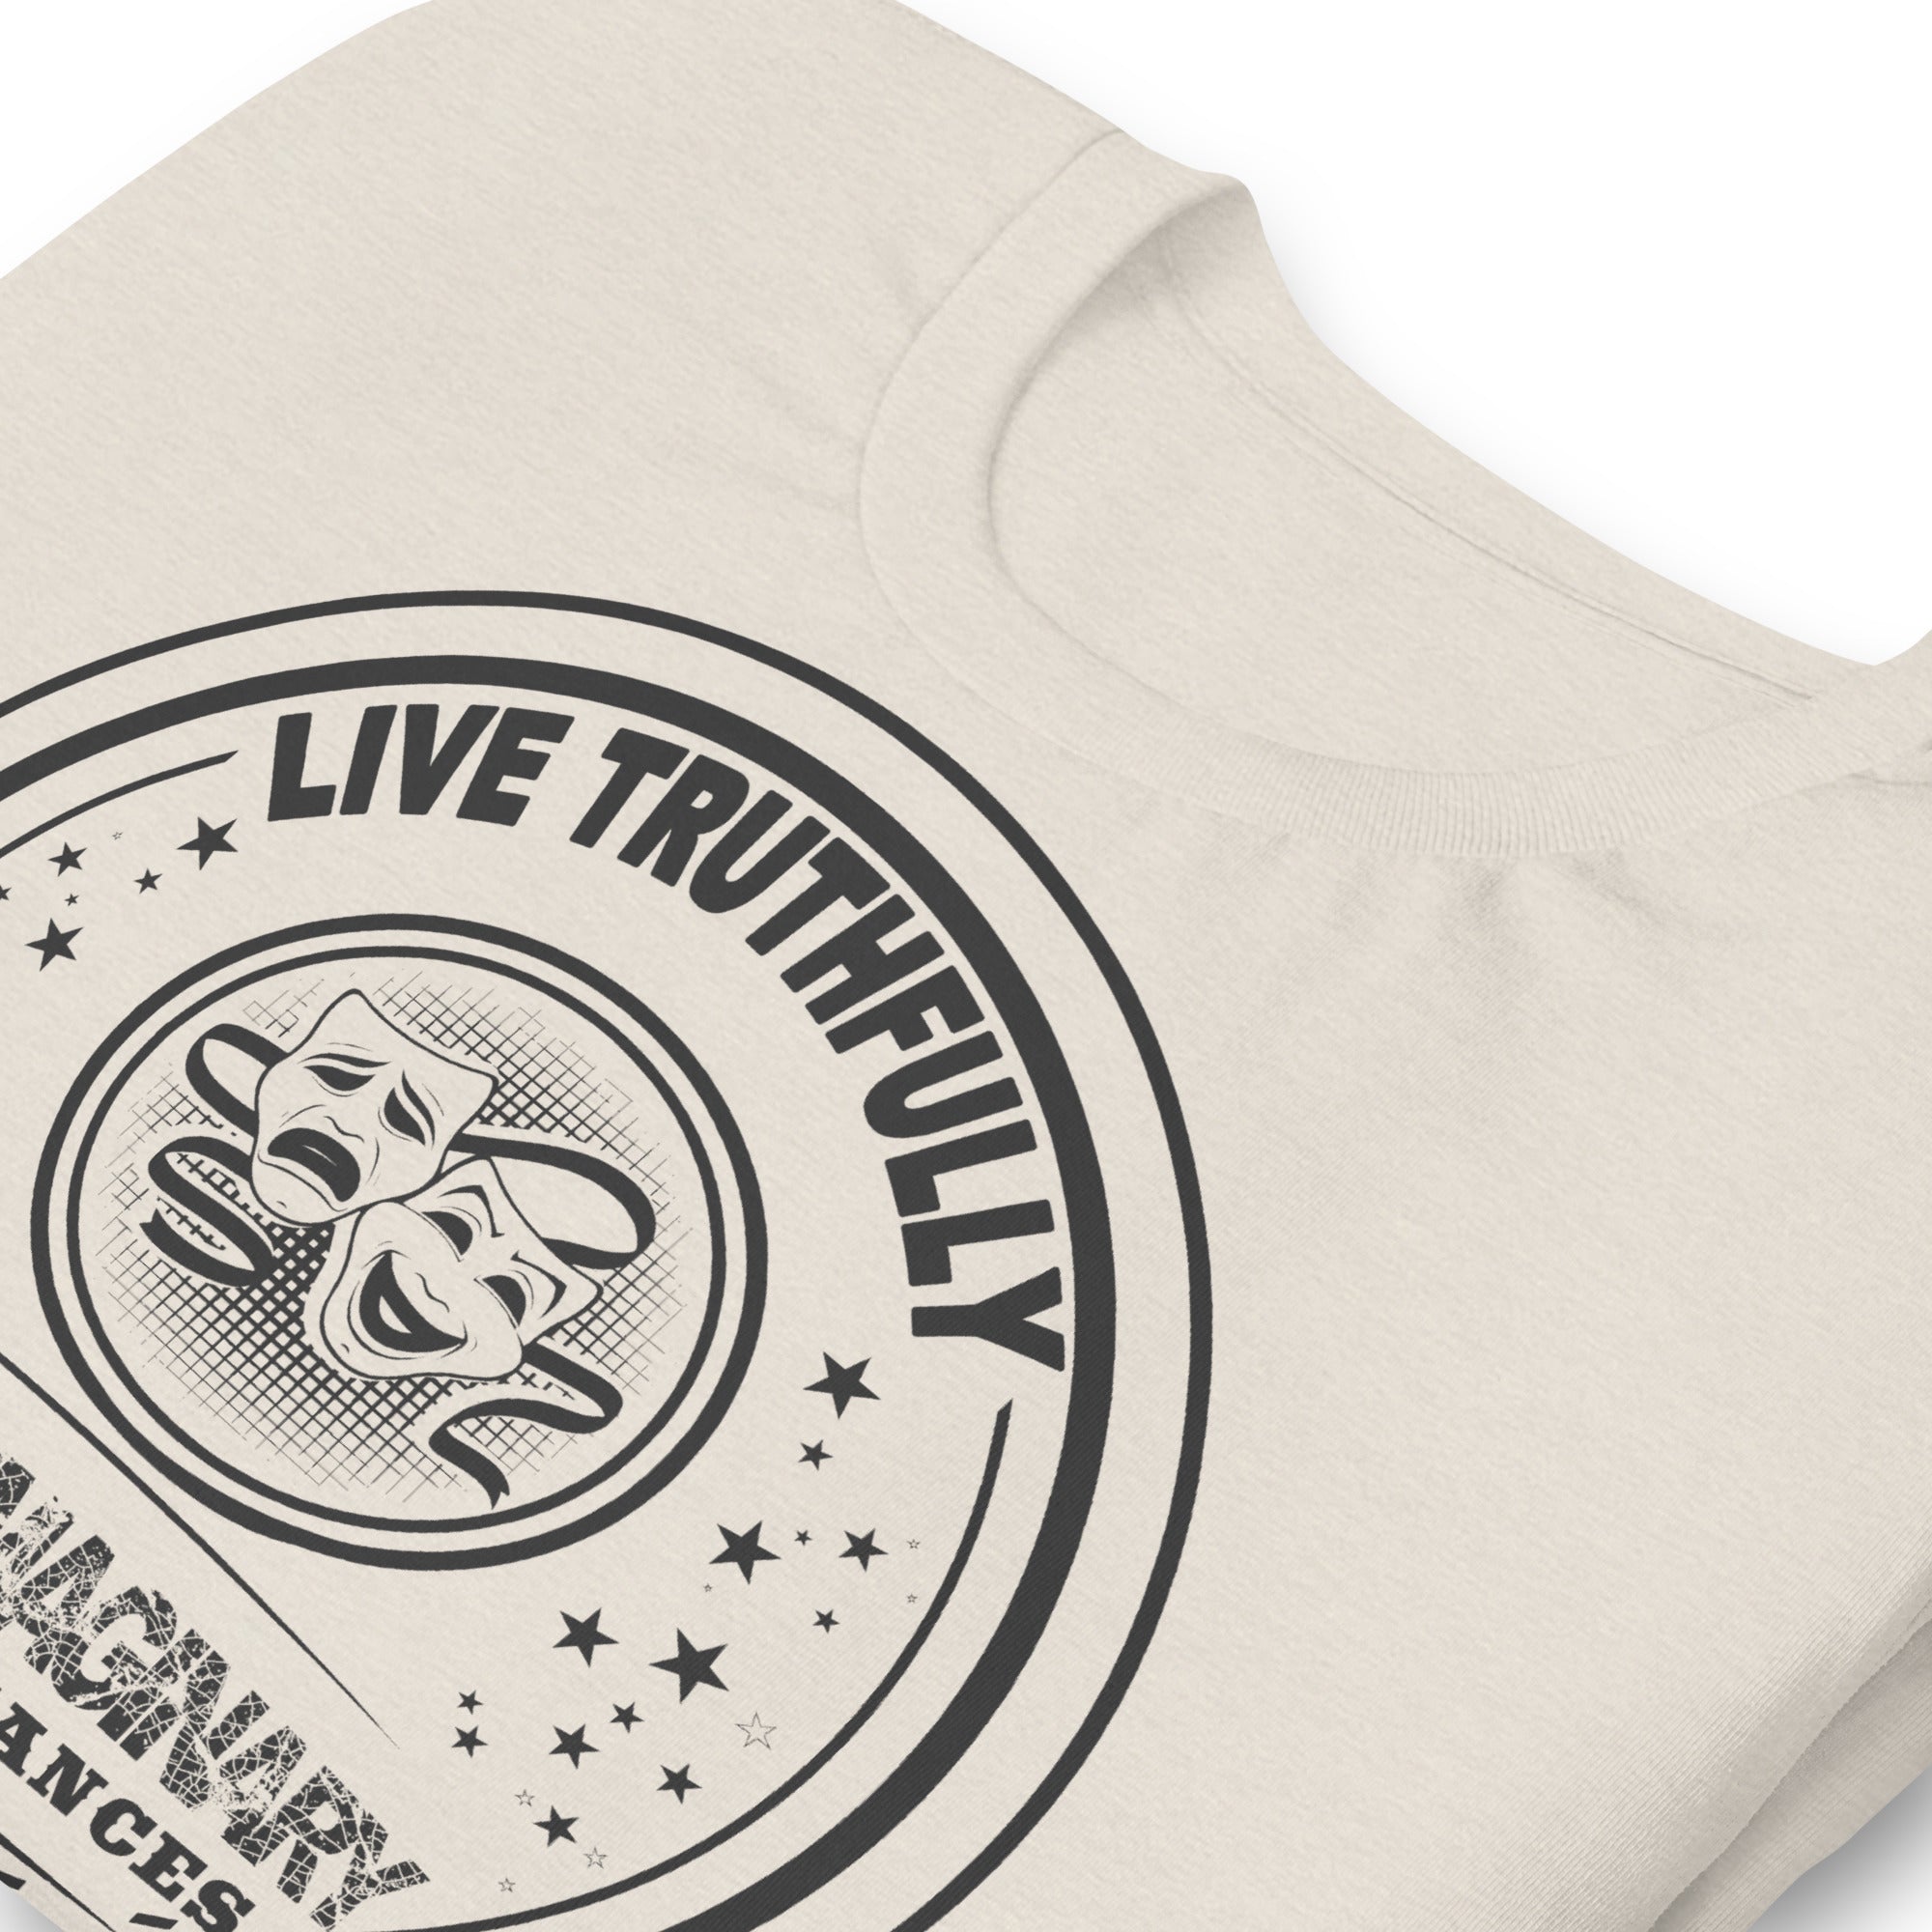 Live Truthfully Circle - Short-Sleeve Staple Unisex T-Shirt